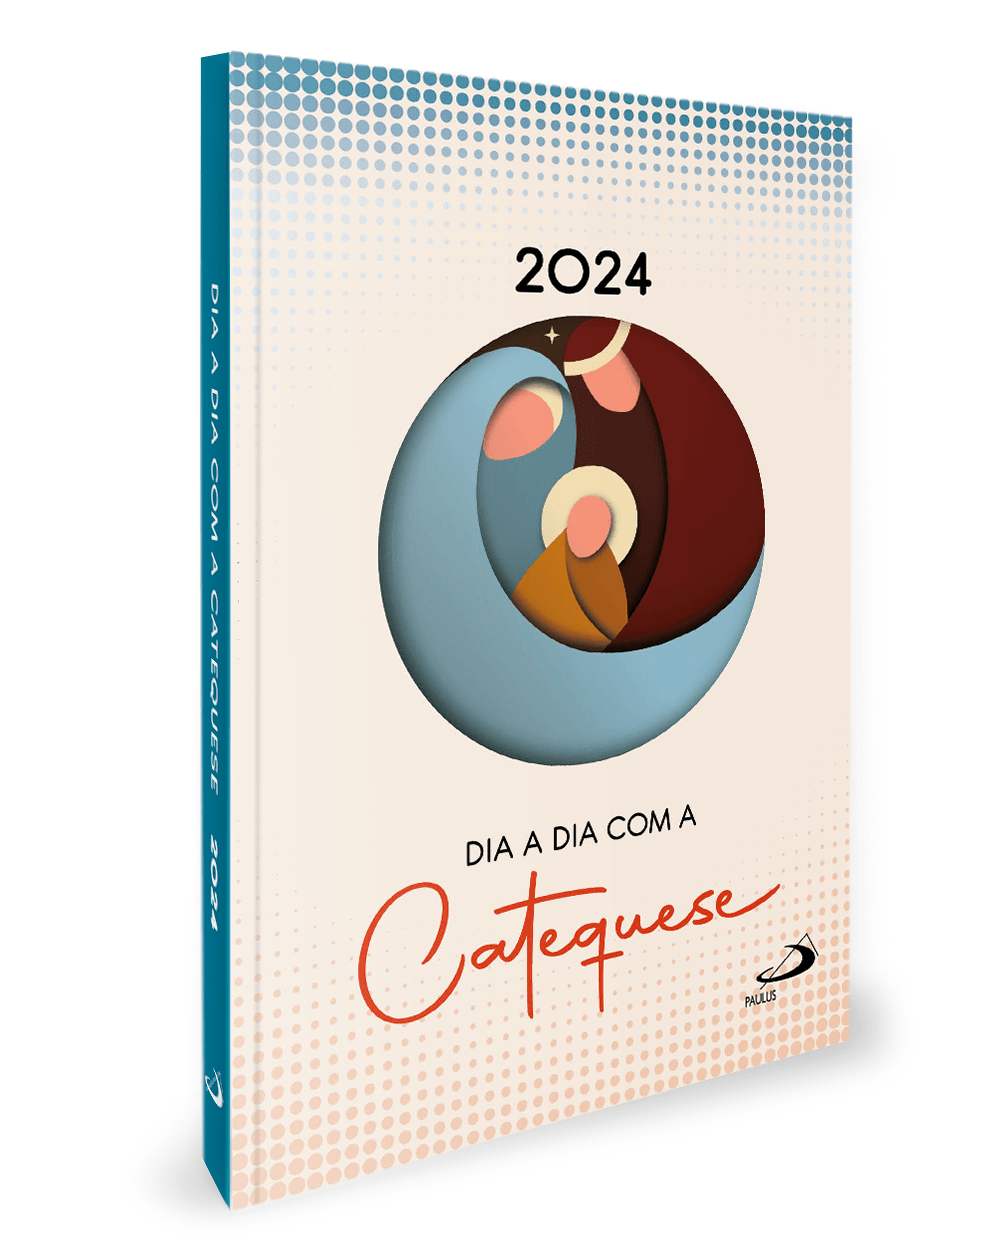 Dia a Dia com a Catequese 2024 - Paulus Editora